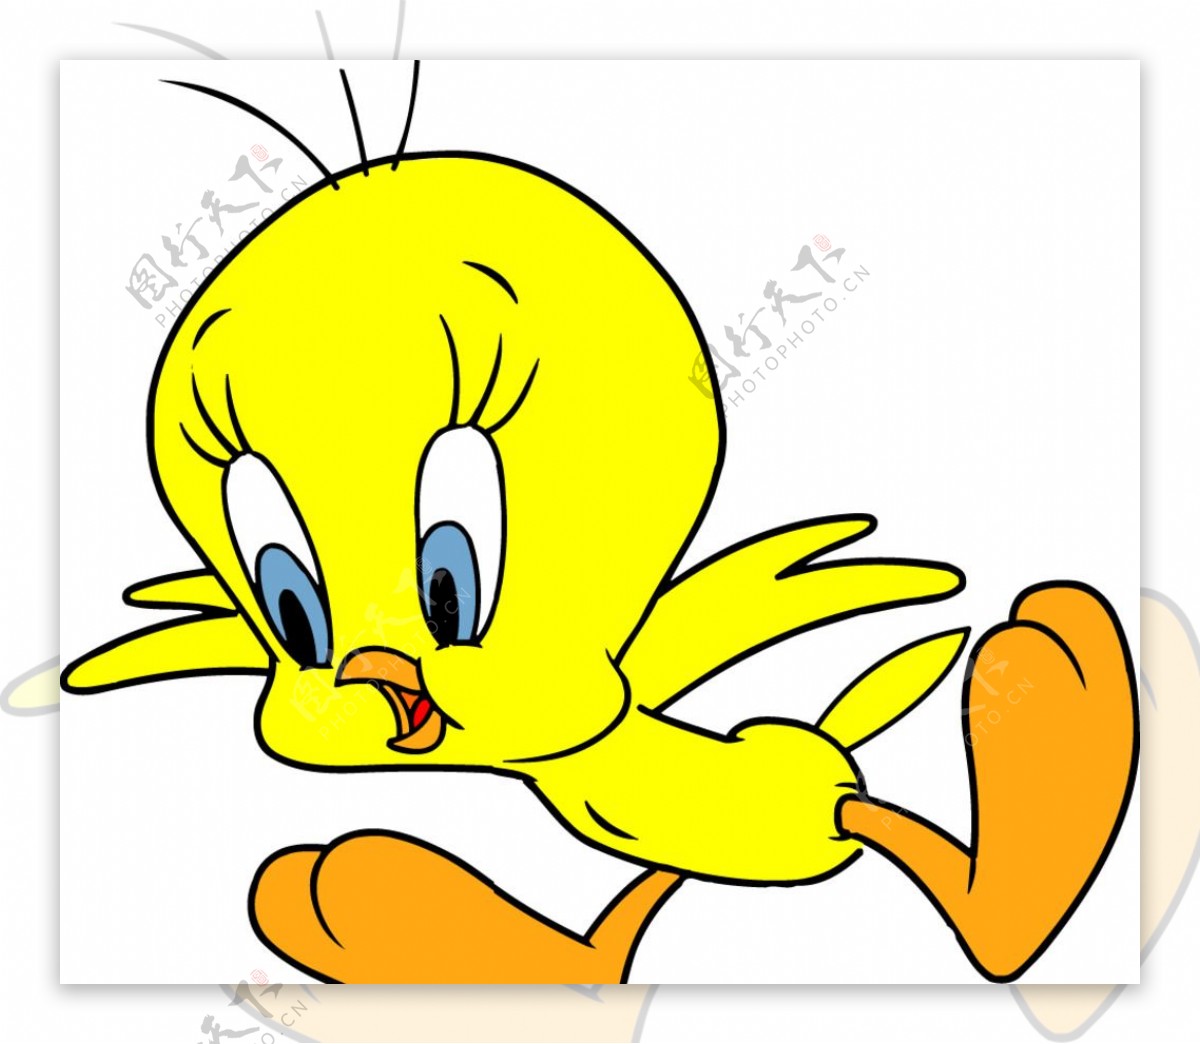 吃惊的小黄鸡卡通画像图片